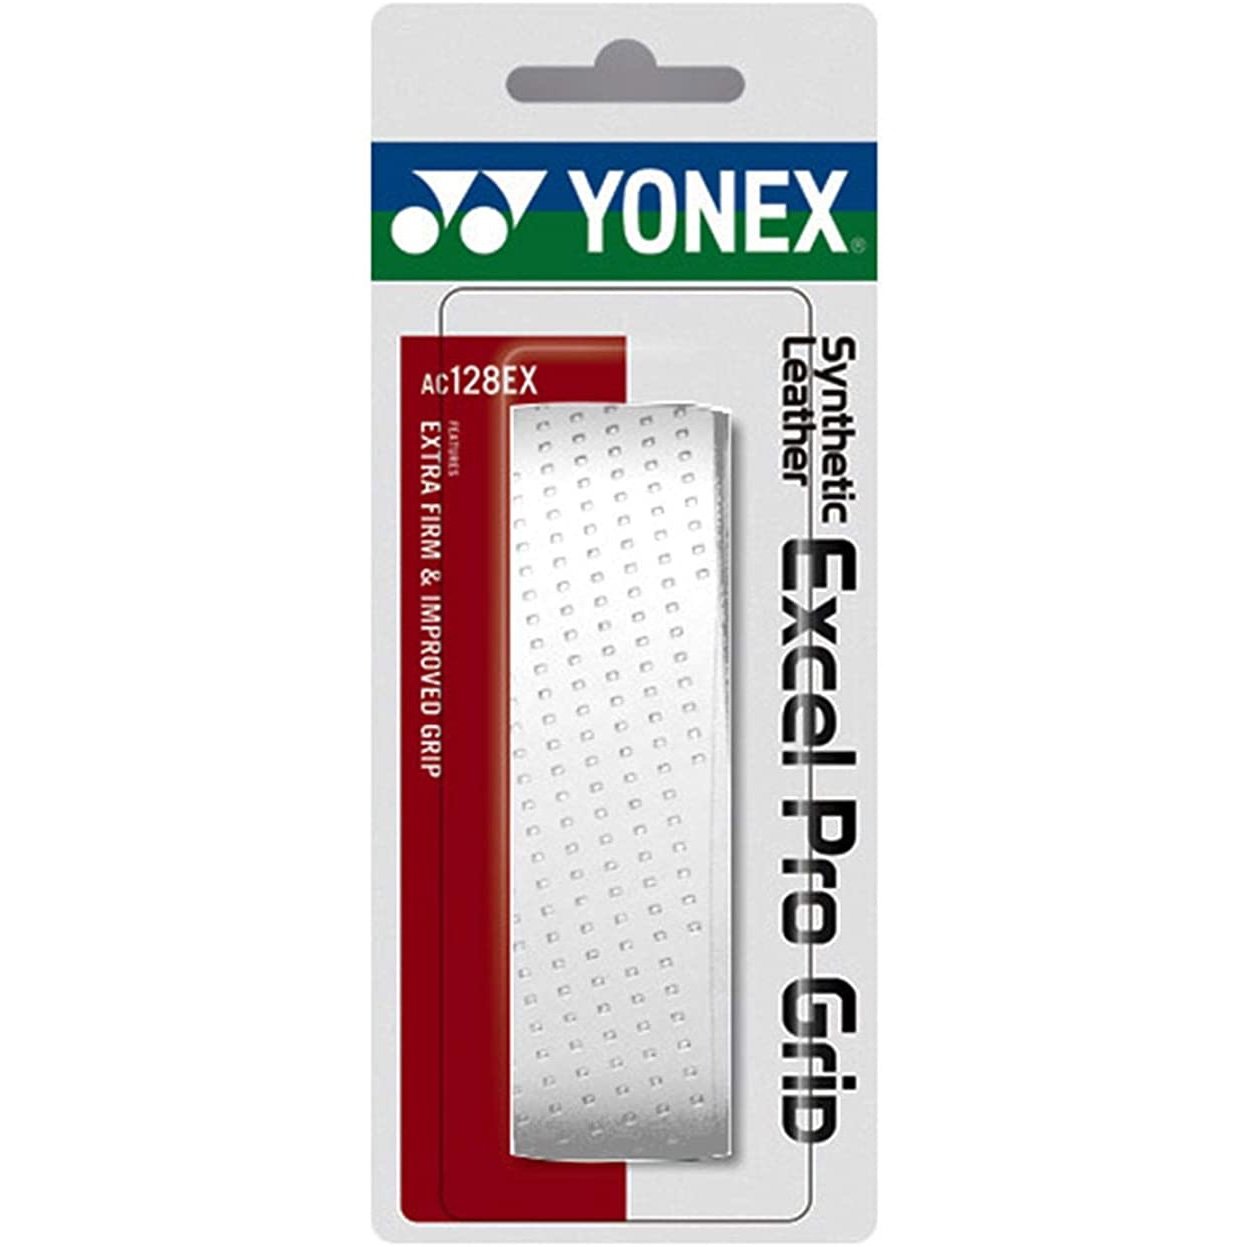 Yonex Excel Pro replacement grip